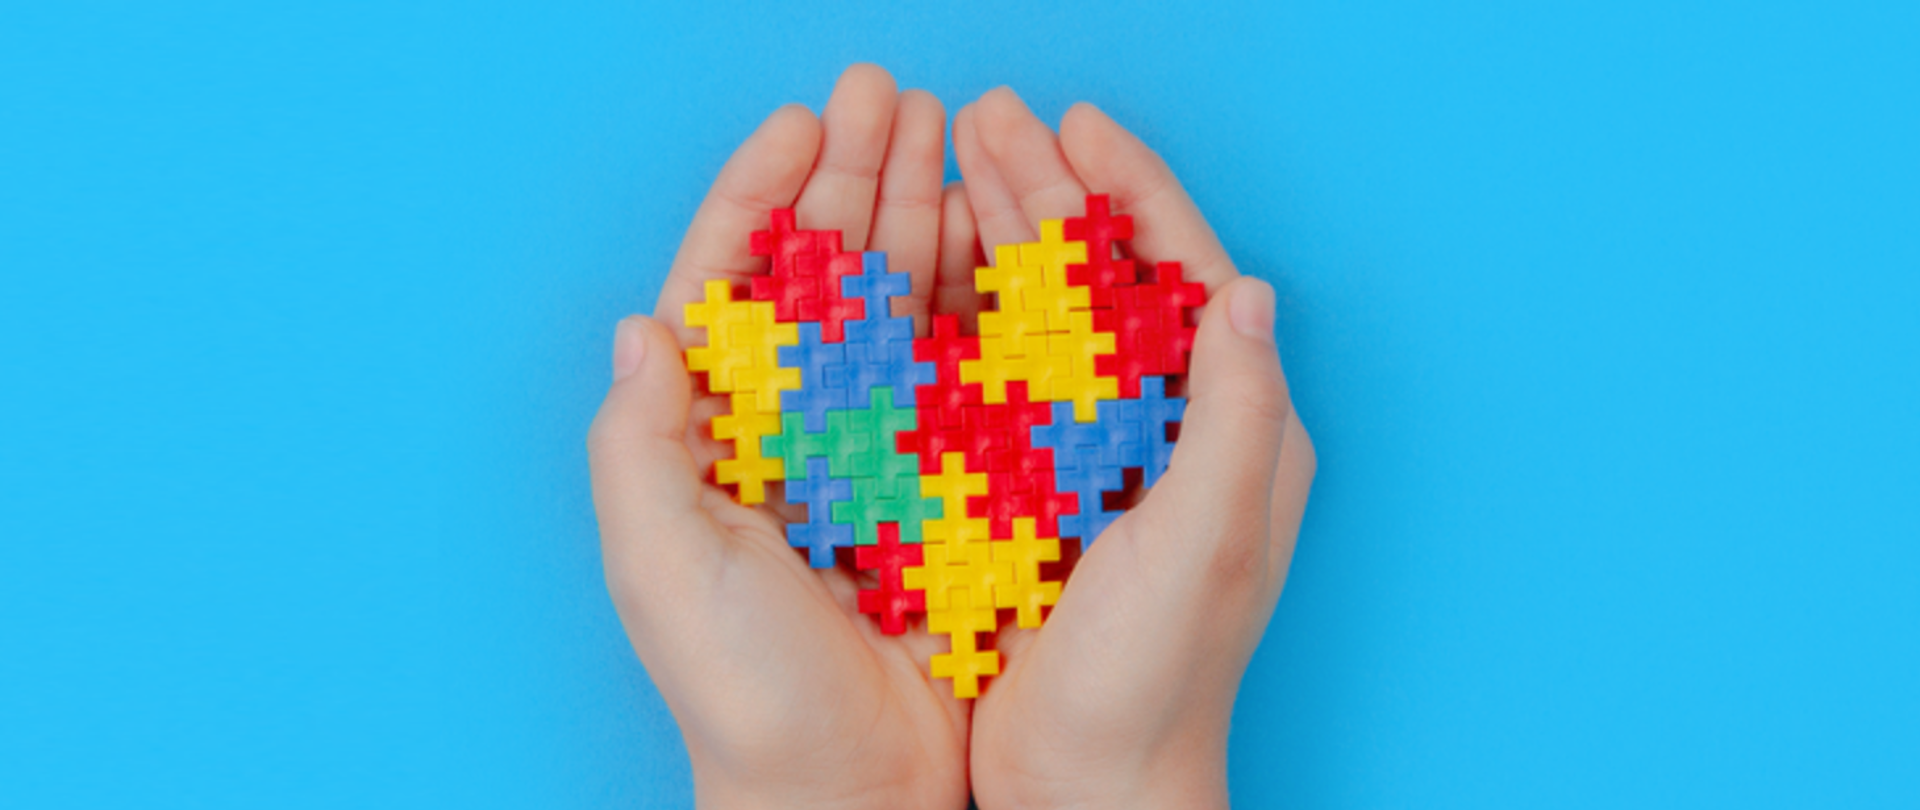 Na niebieskim tle złożone dłonie, w których ułożone jest serce z żółto-niebiesko-czerwono-zielonych puzzli